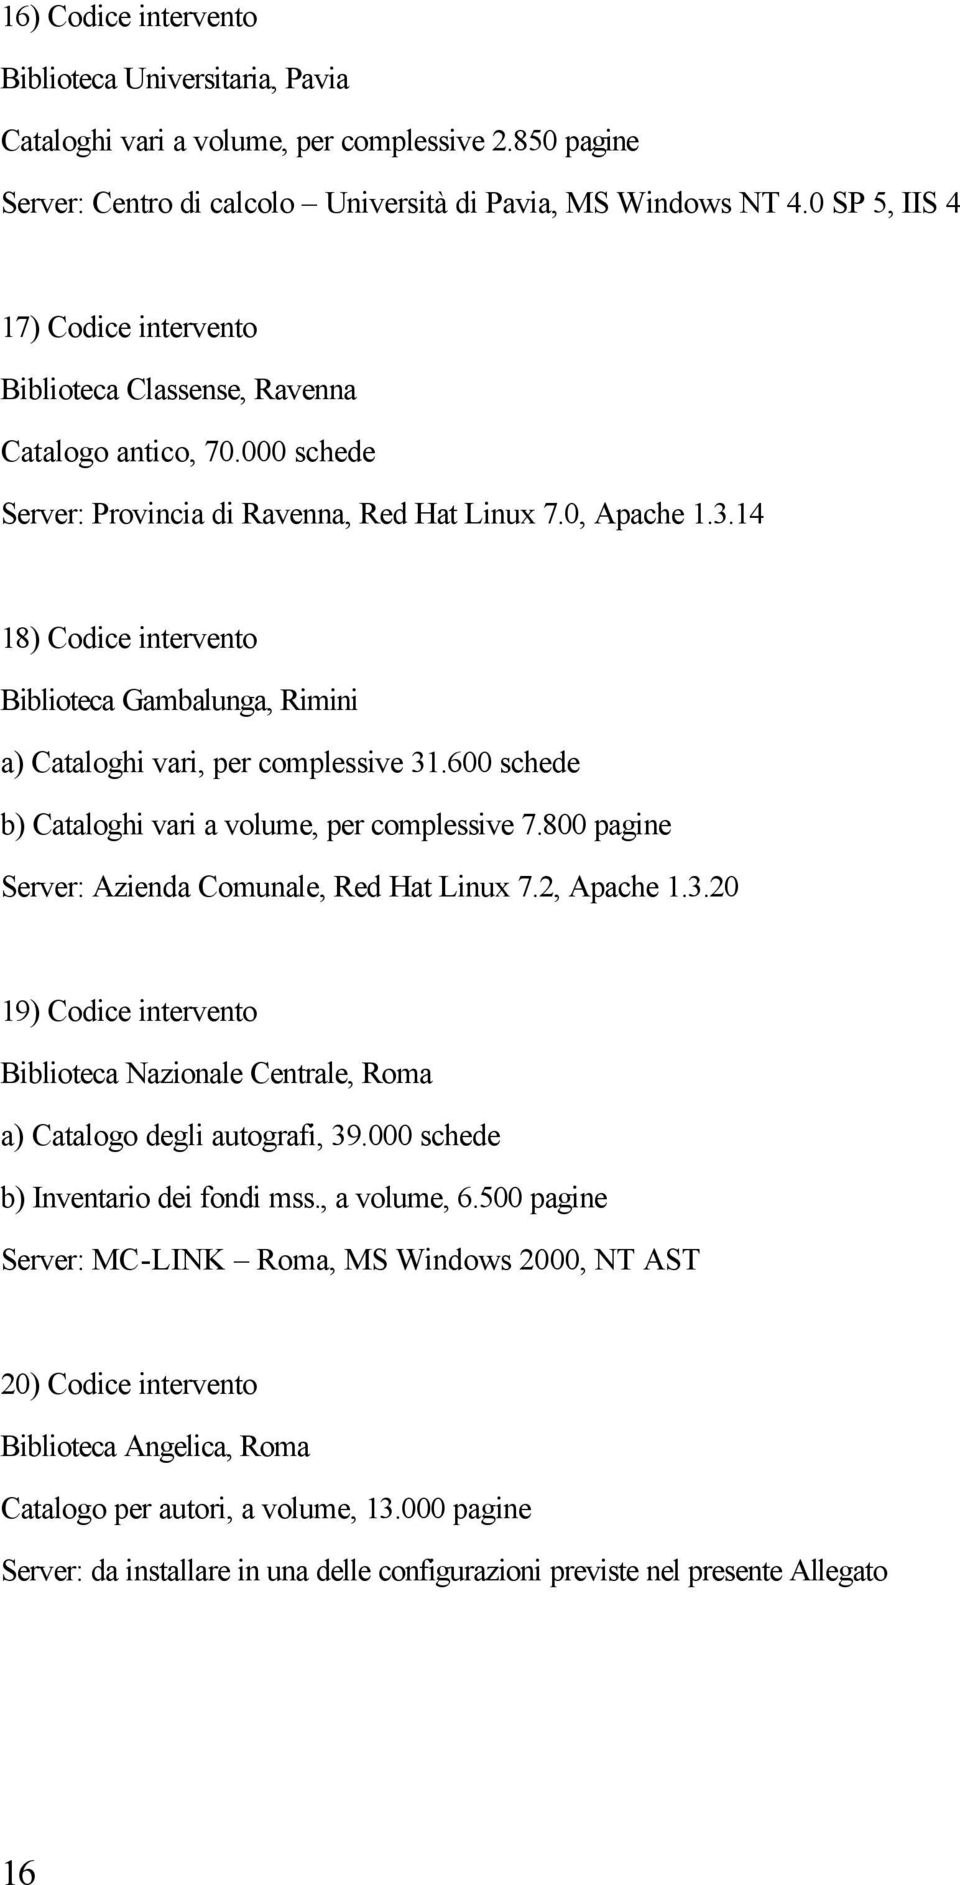 14 18) Codice intervento Biblioteca Gambalunga, Rimini a) Cataloghi vari, per complessive 31.600 schede b) Cataloghi vari a volume, per complessive 7.